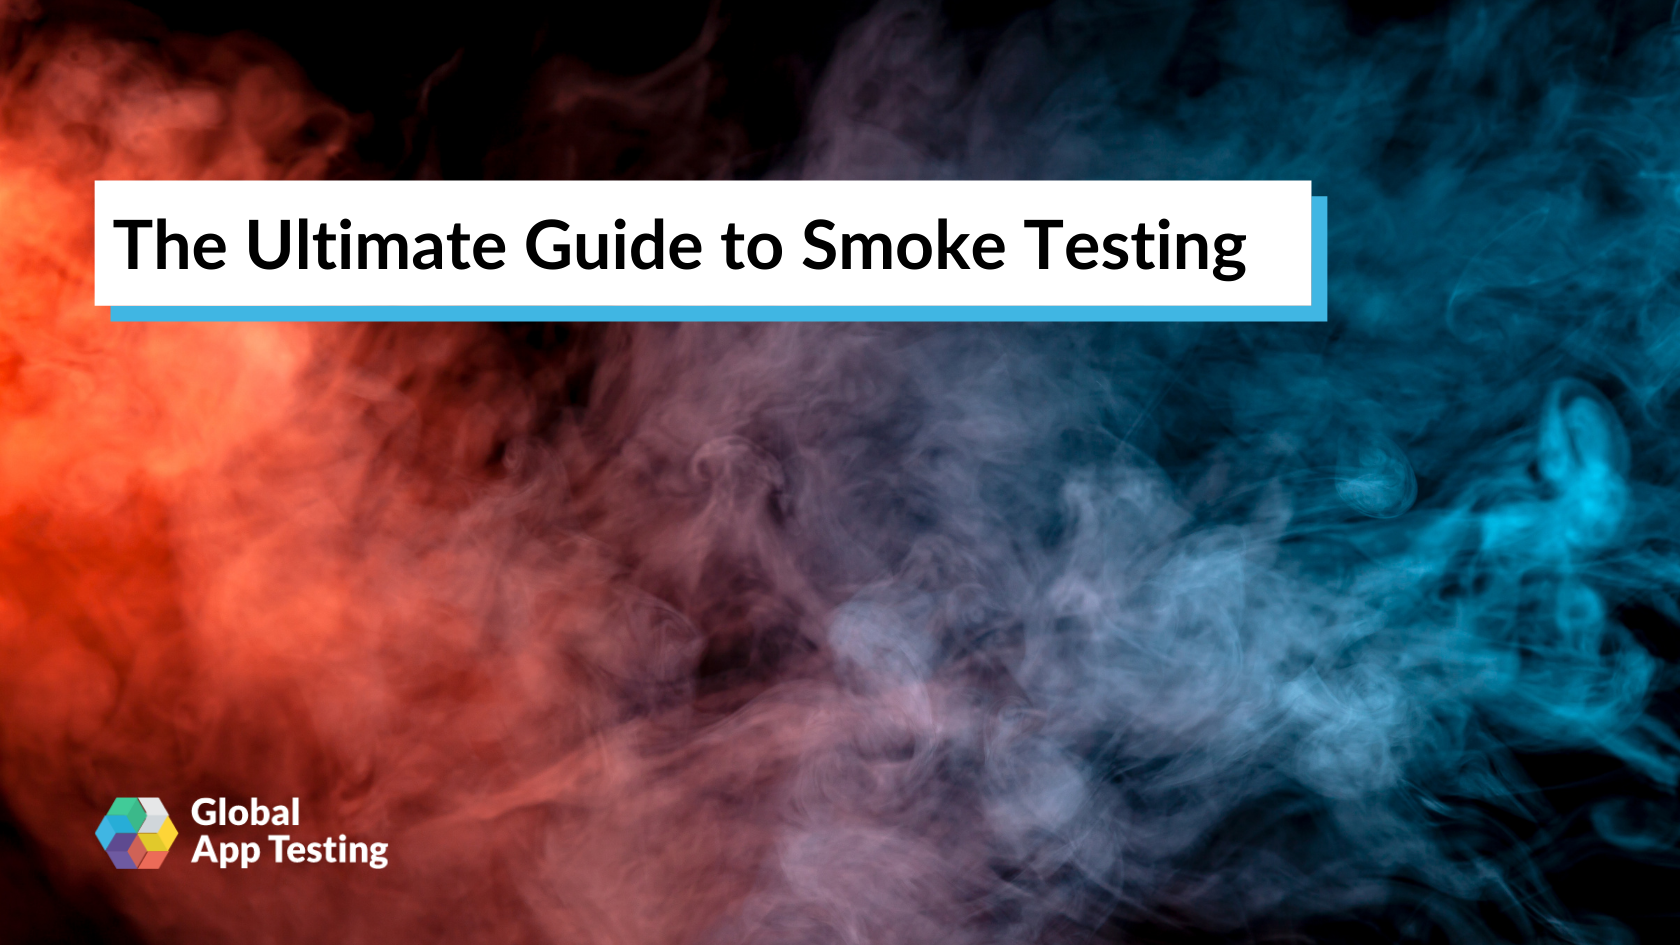 Đang tìm kiếm những kiến thức về kiểm thử khói? Hình ảnh liên quan sẽ giúp bạn nhìn rõ hơn về quy trình này, giúp bạn nâng cao kỹ năng của mình.